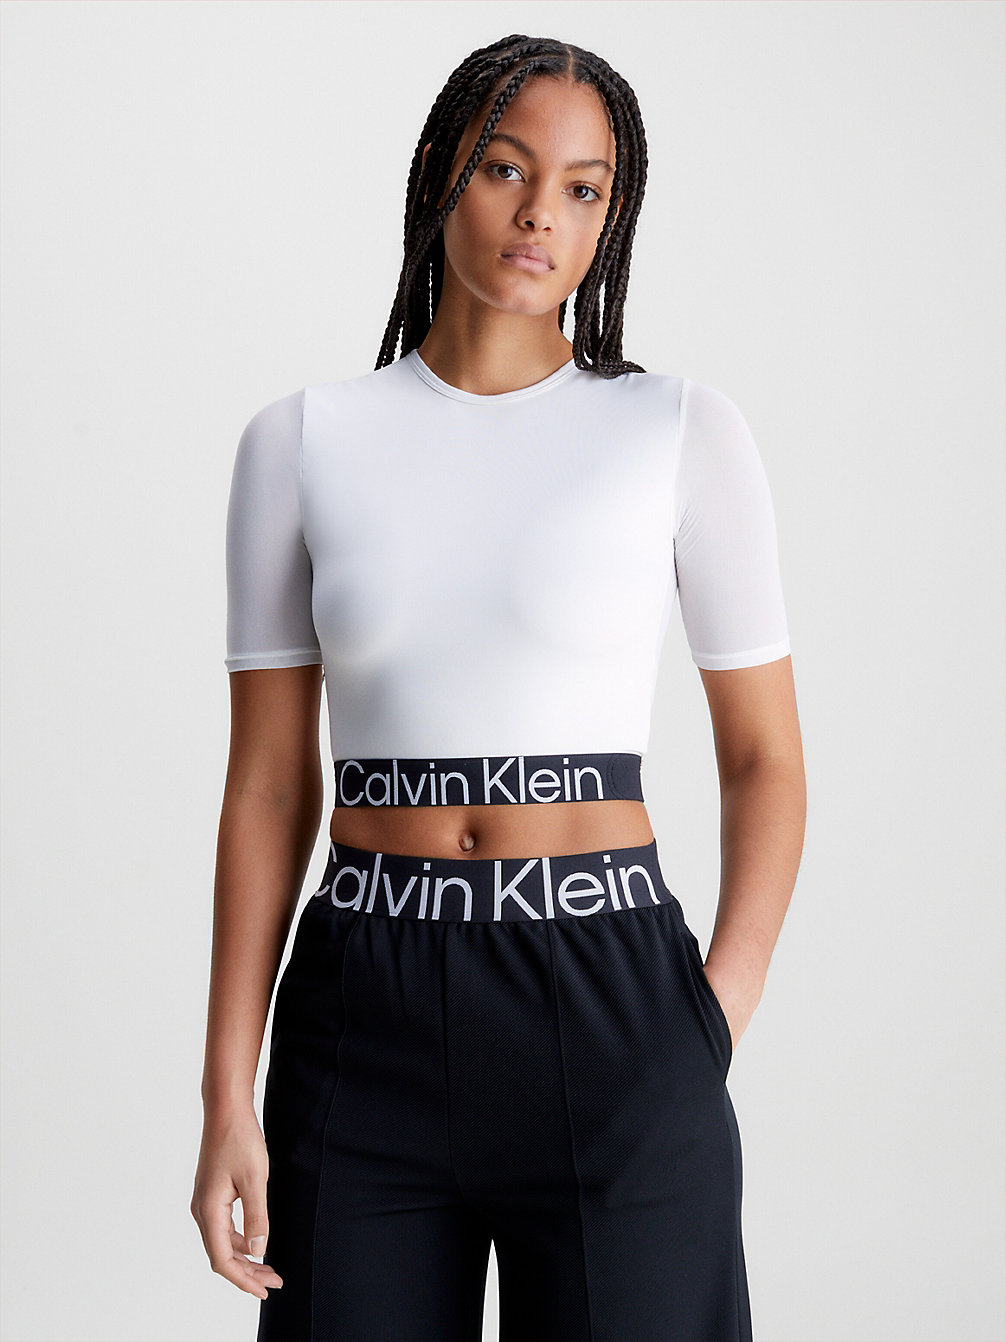 BRIGHT WHITE > T-Shirt Sportowy O Krótkim Fasonie > undefined Kobiety - Calvin Klein